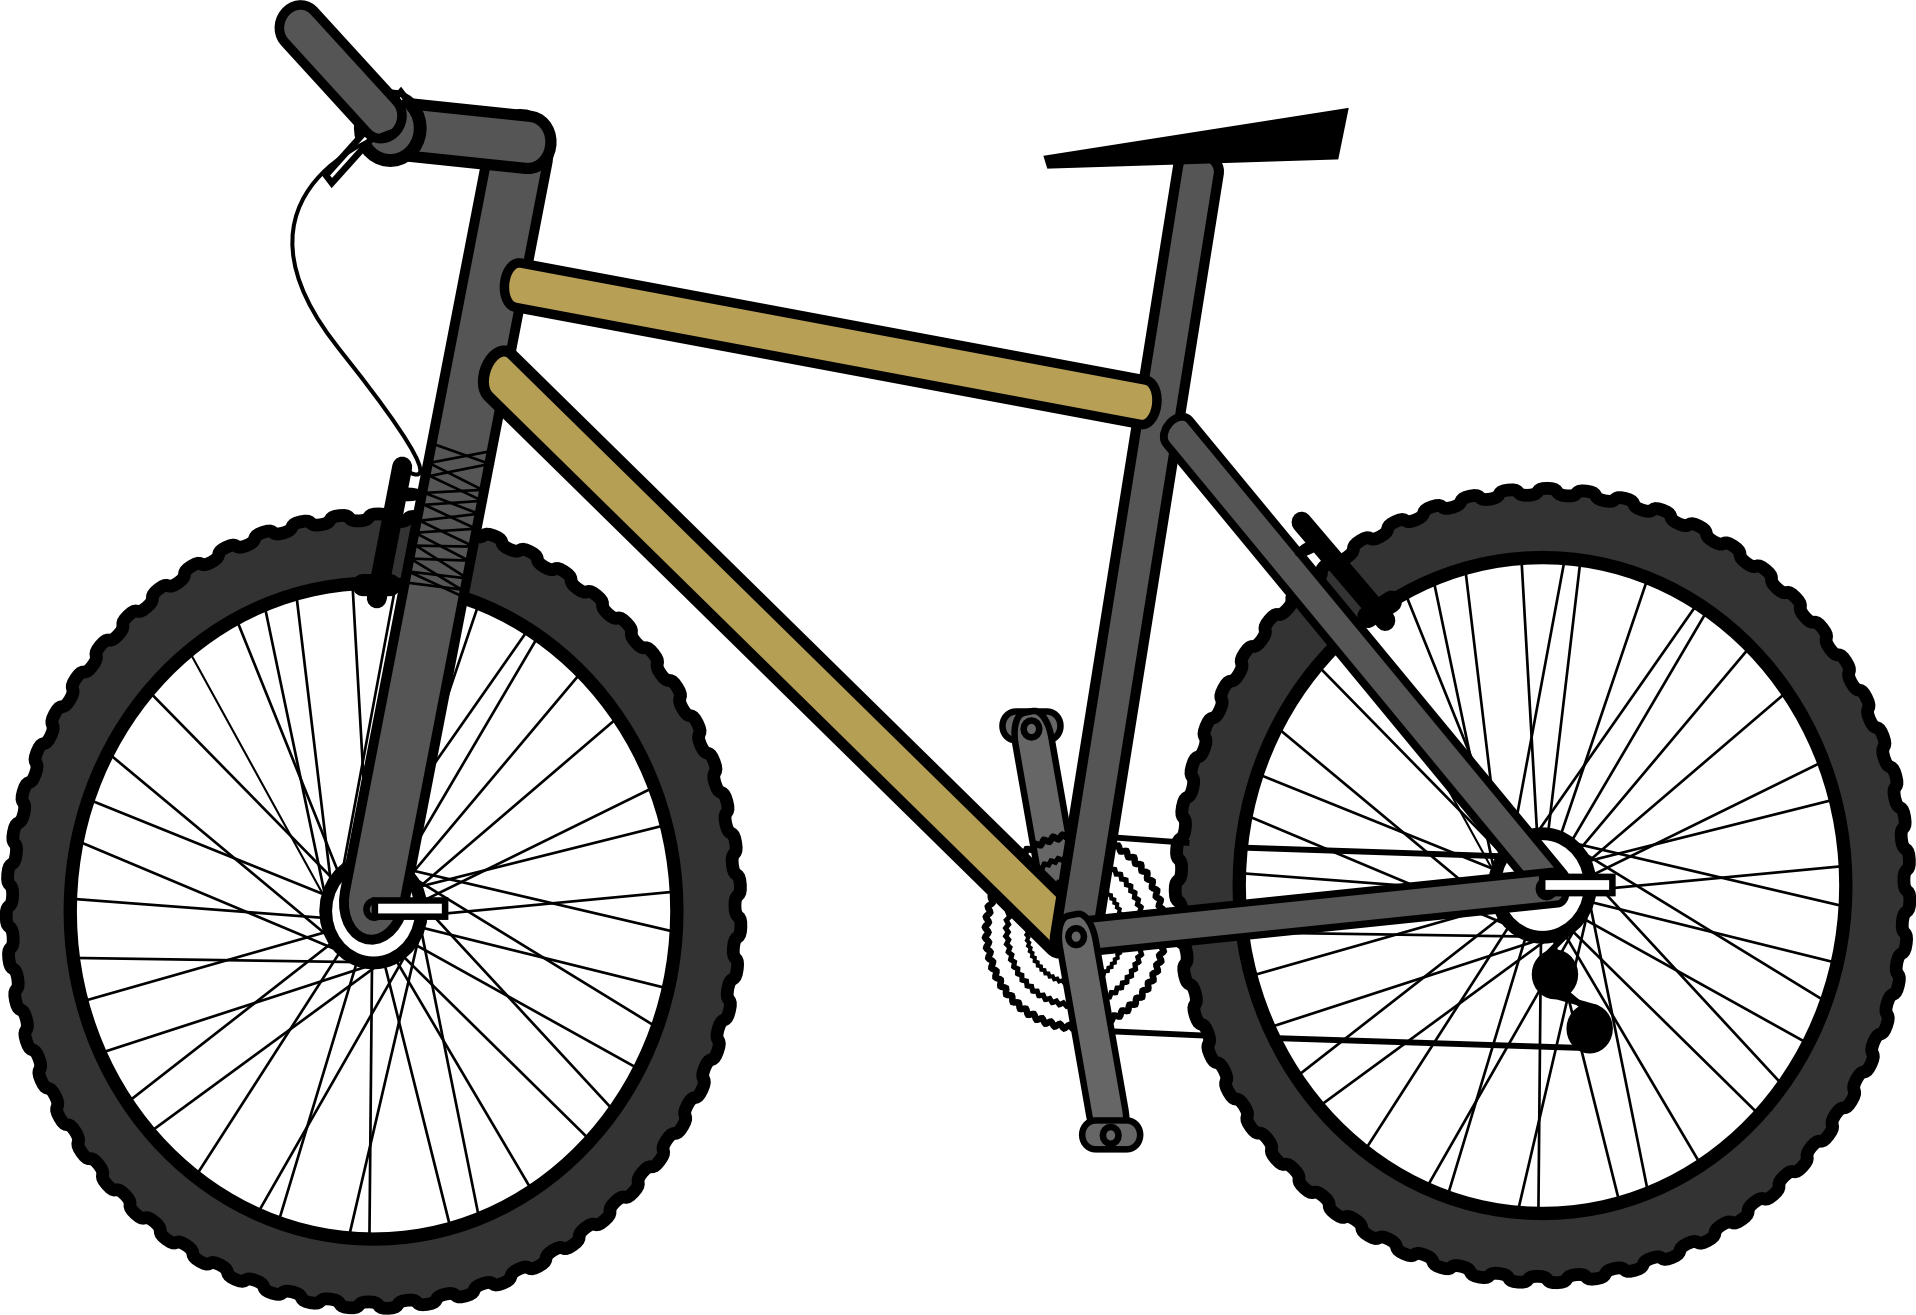 Tiedostonimi: Cykel.png. Kuvan On Tehnyt: Openclipart. Koulu: Utbildningsavdelningen Kuvan Nimi: Cykel Kategoria: Urheilu Koristeelliset Osat - Cykel, Transparent background PNG HD thumbnail